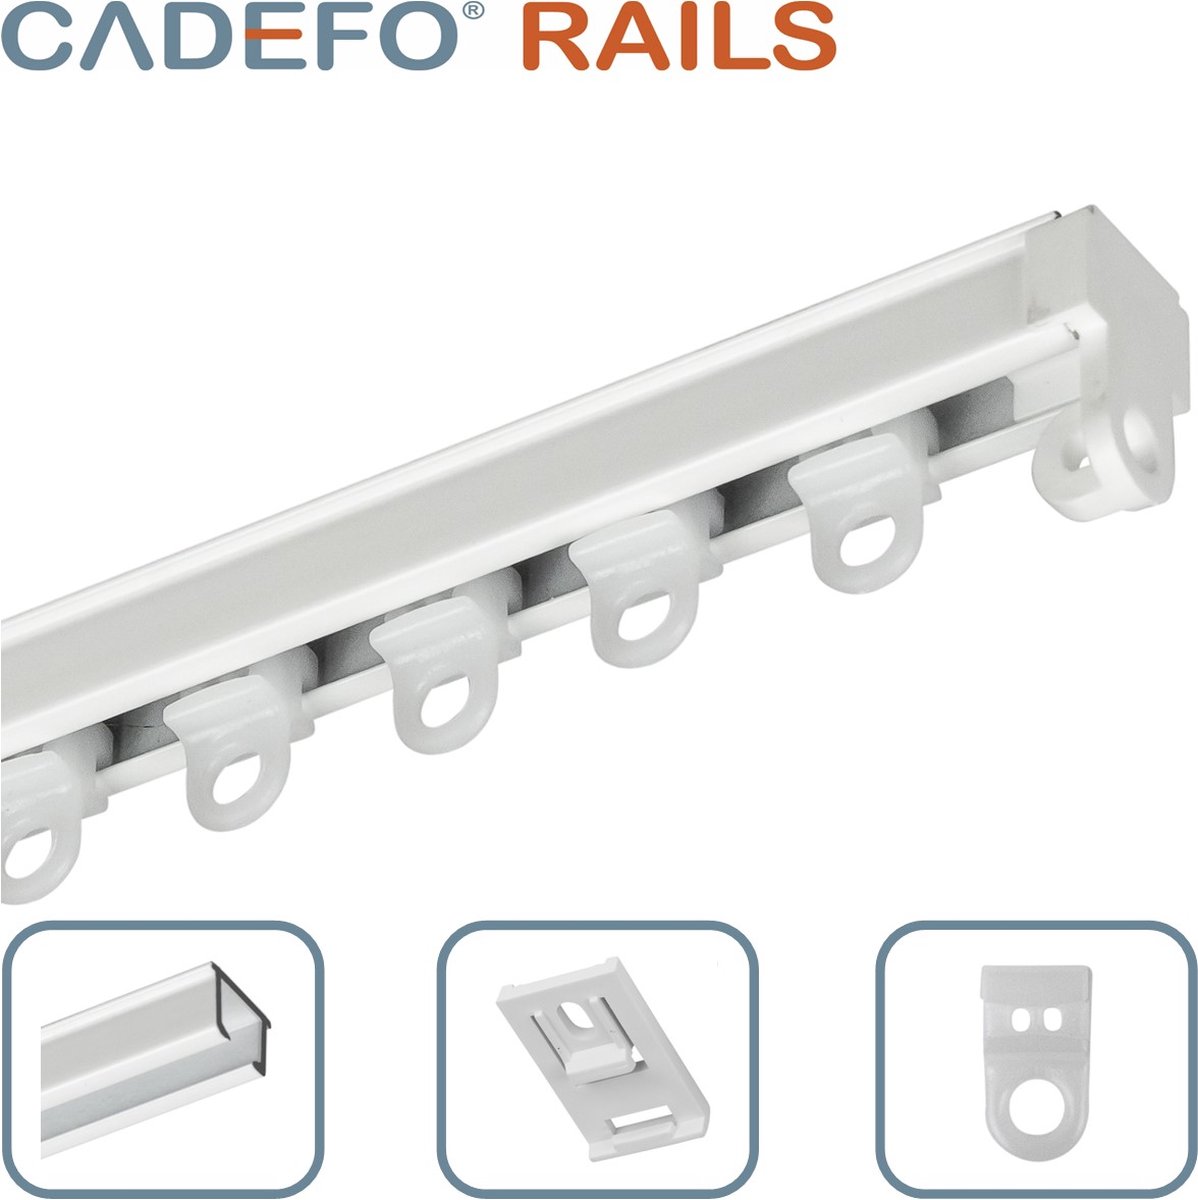 CADEFO RAILS (501 - 550 cm) Gordijnrails - Compleet op maat! - UIT 1 STUK - Leverbaar tot 6 meter - Plafondbevestiging - Lengte 525 cm